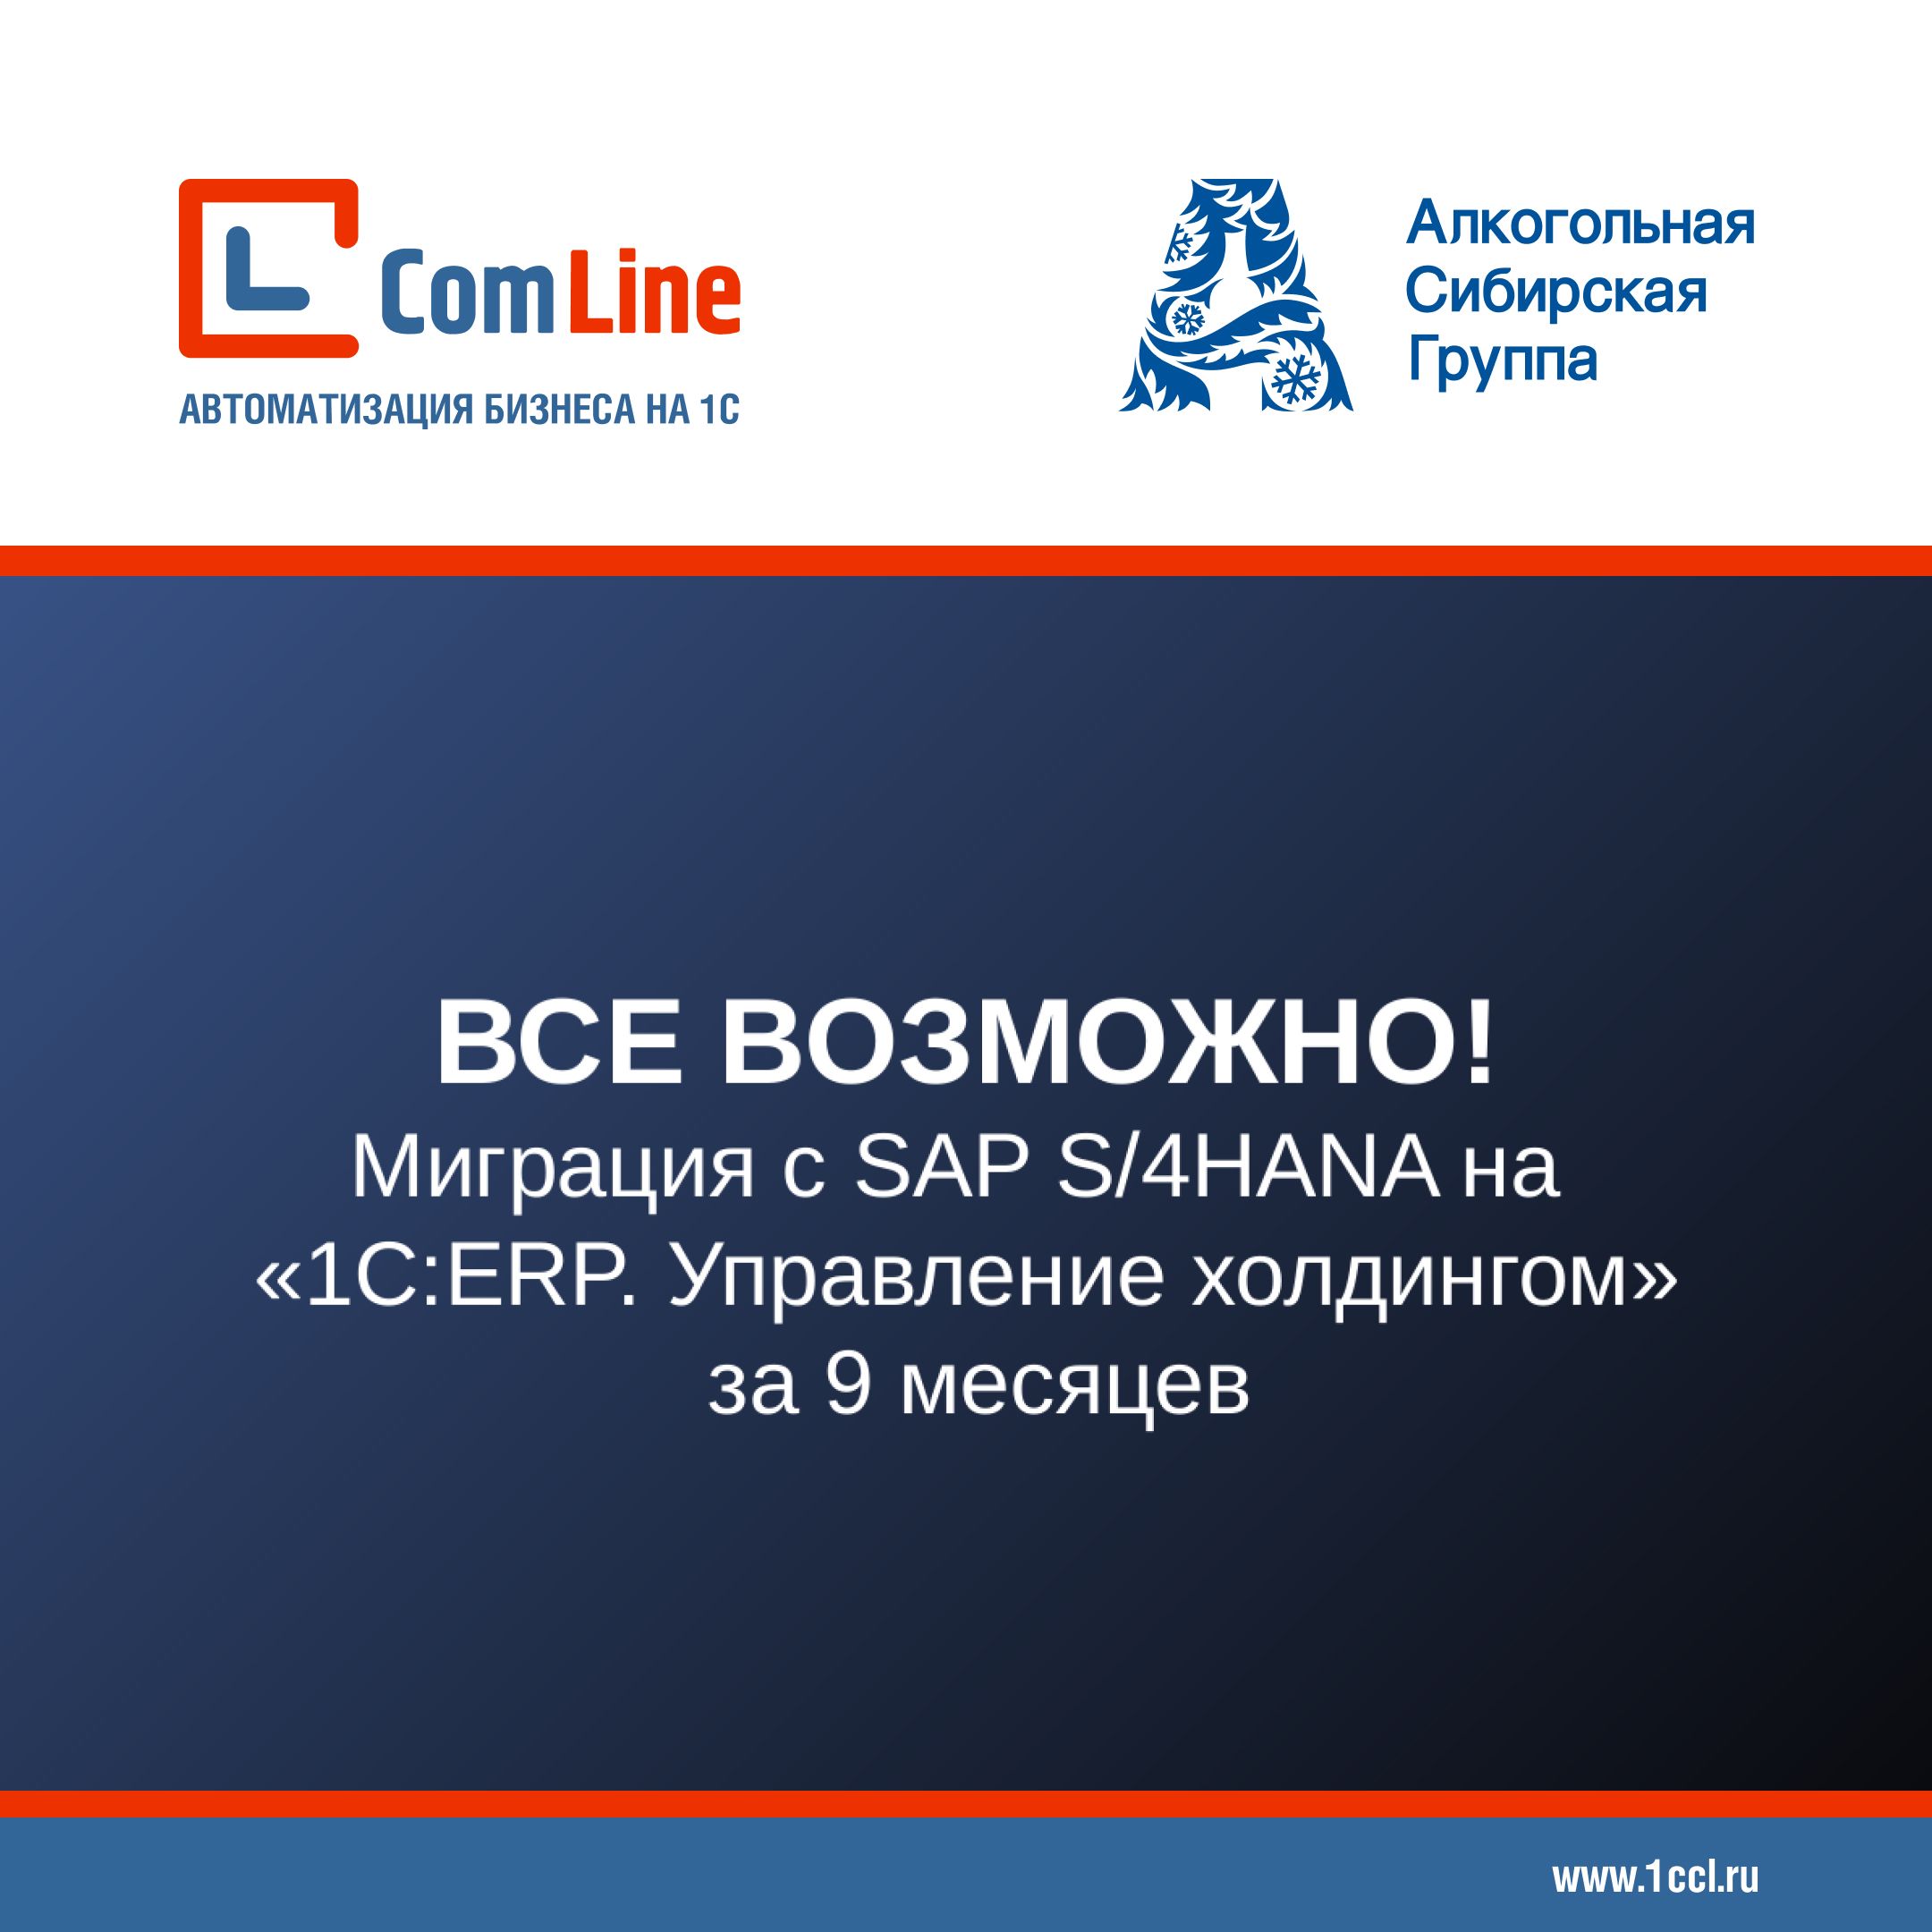 ГК «КомЛайн» совместно с «Алкогольной Сибирской Группой» представили кейс перехода с SAP на 1С